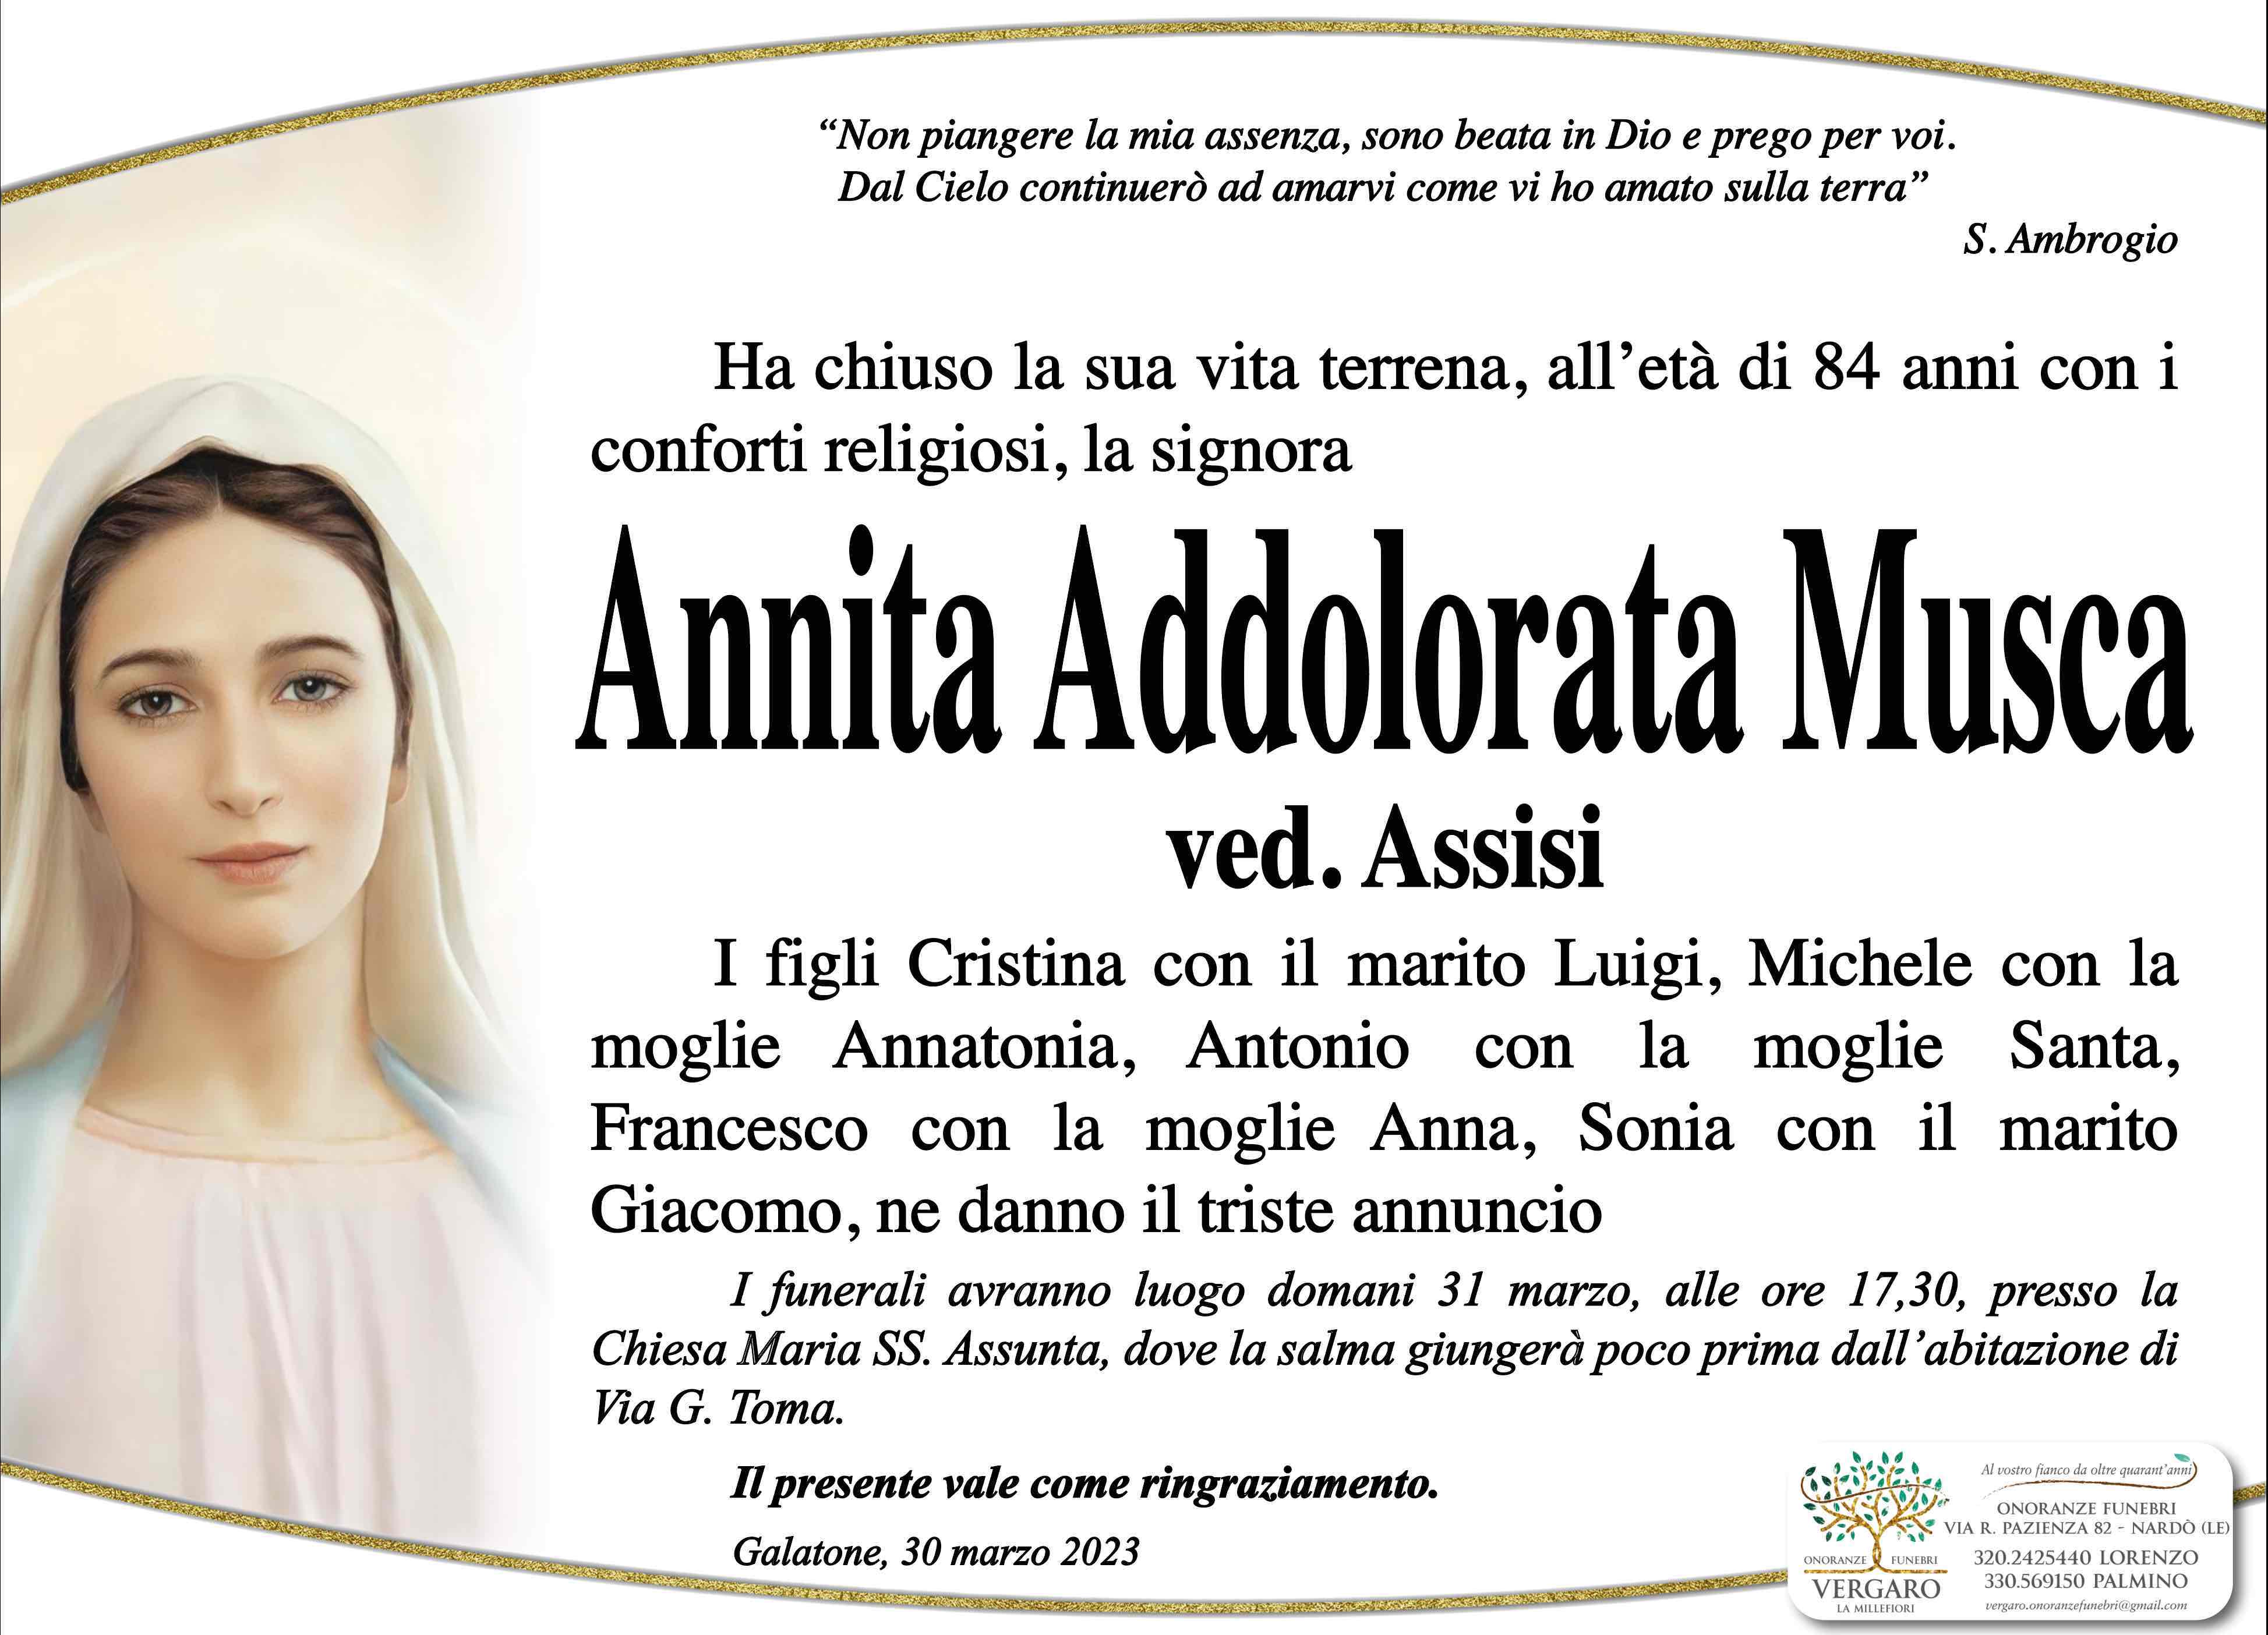 Annita Addolorata Musca